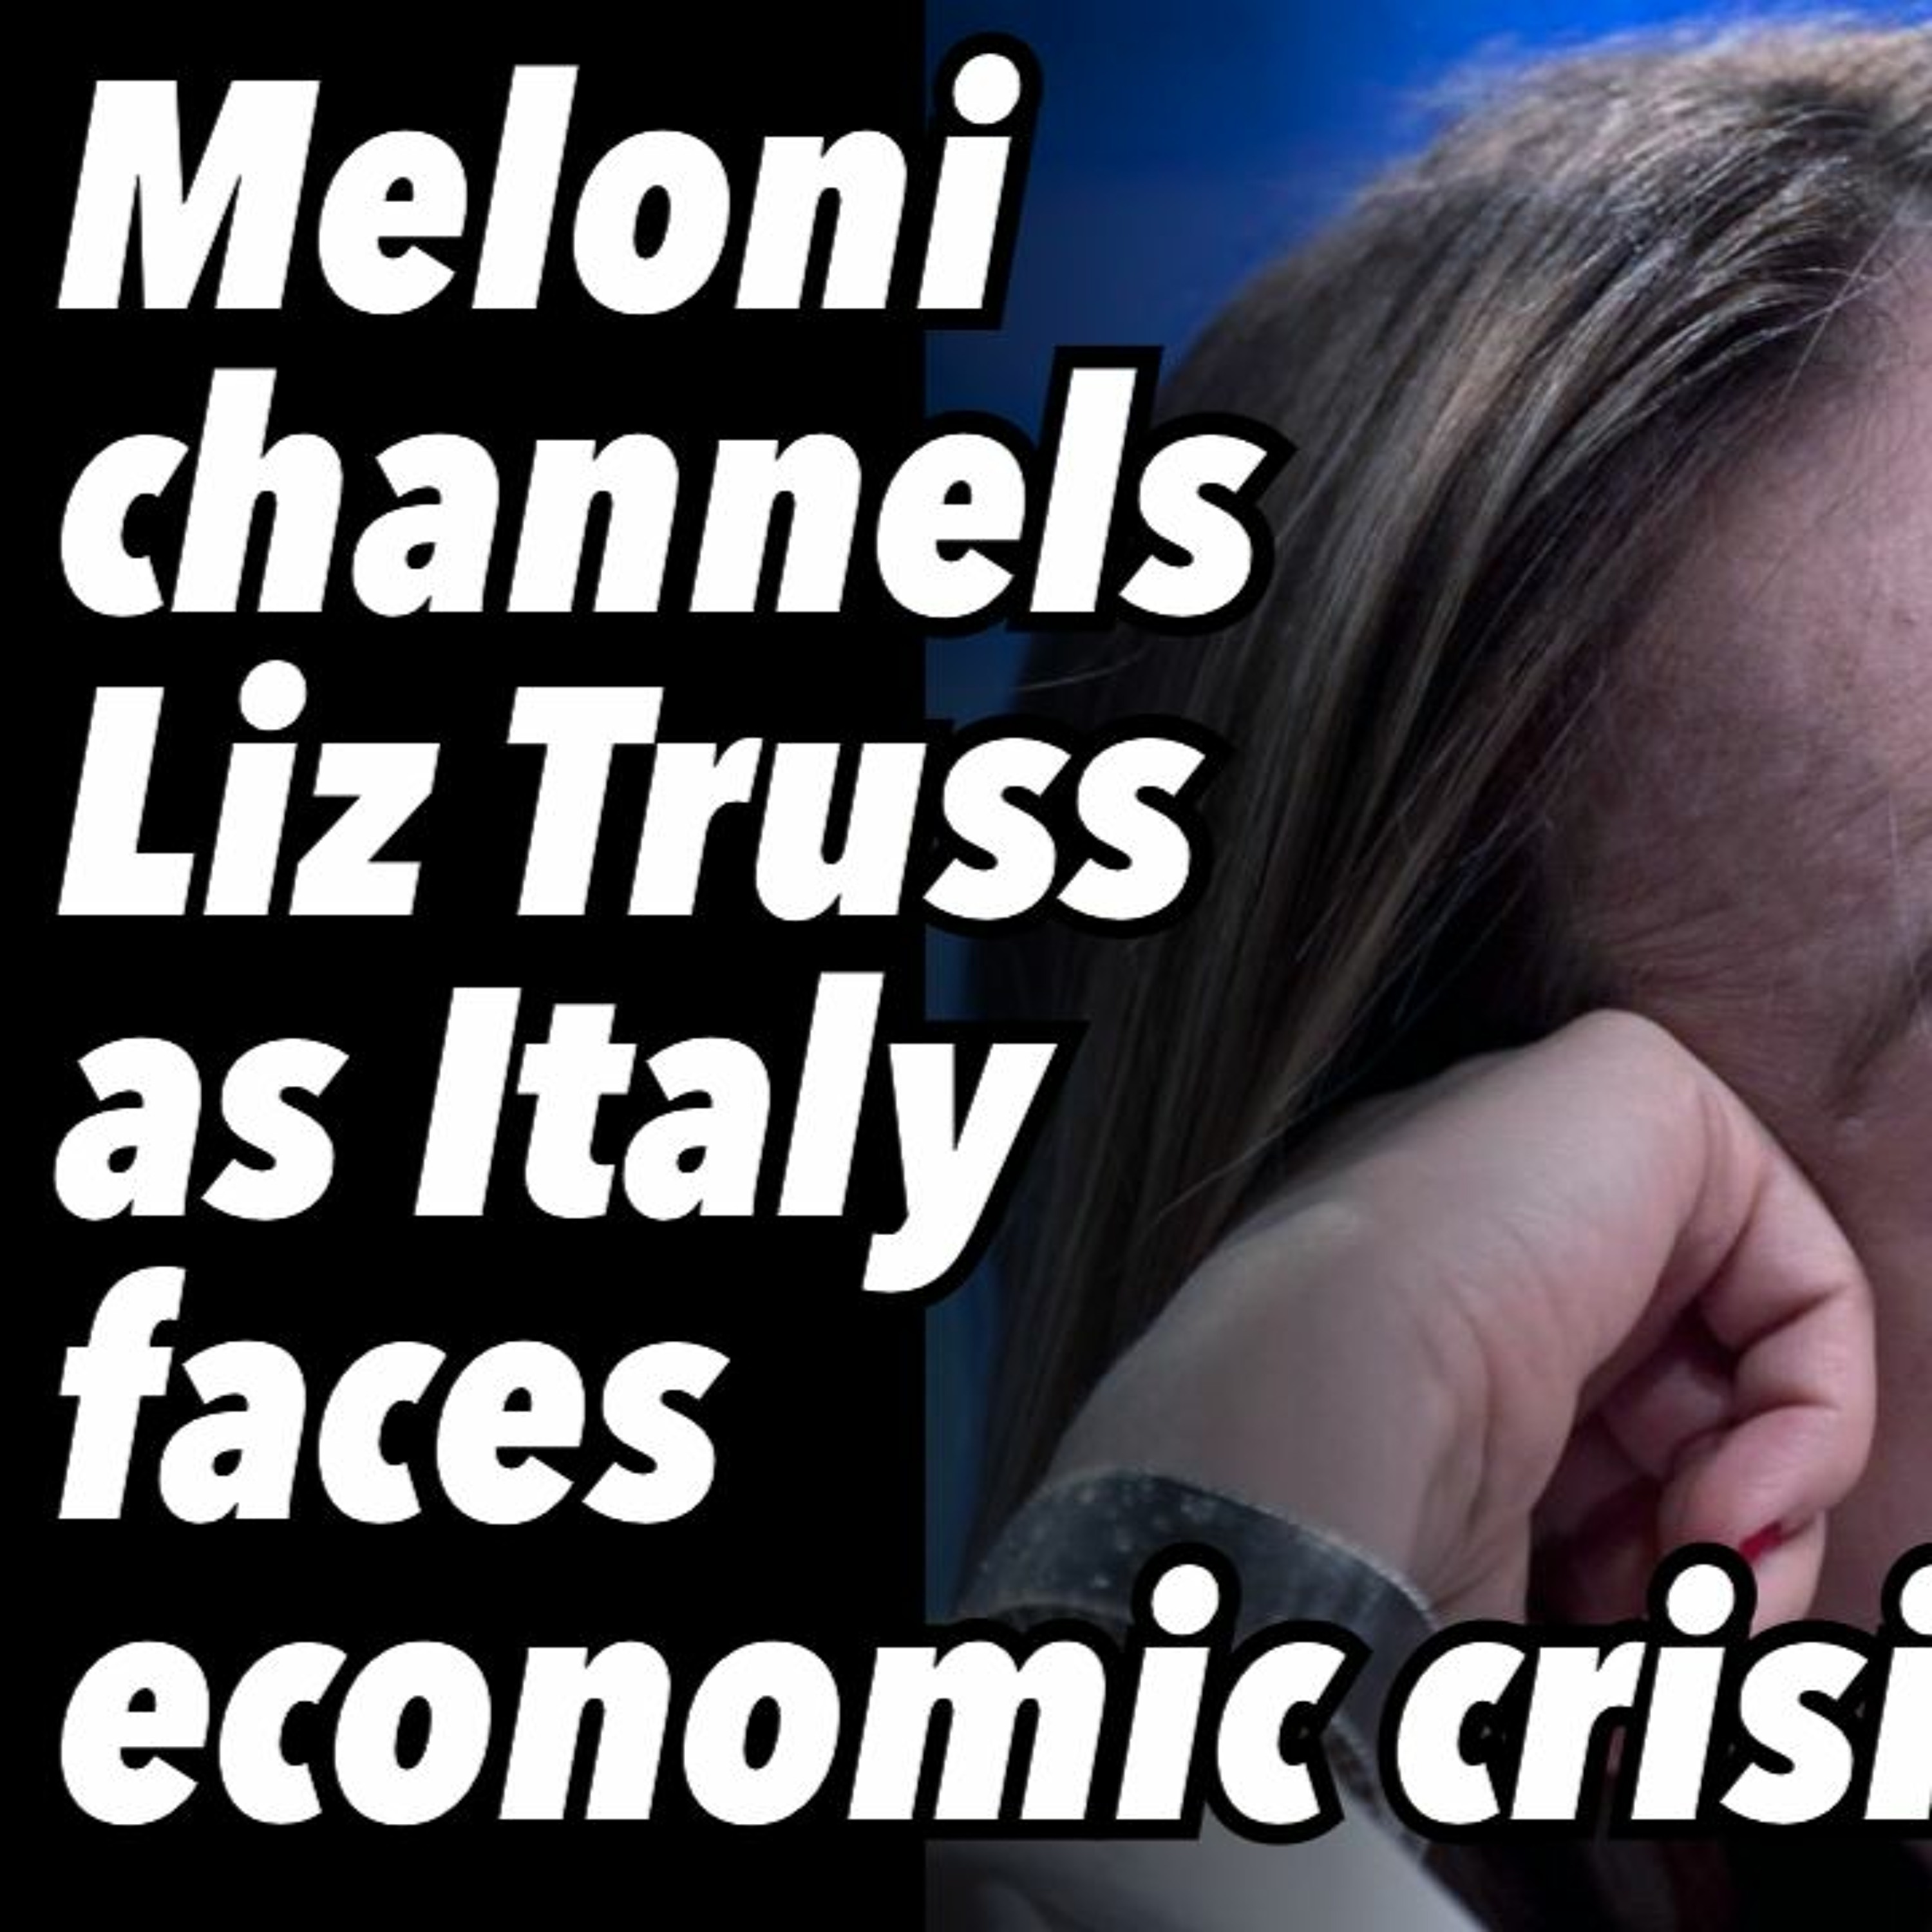 Meloni channels Liz Truss as Italy faces economic crisis